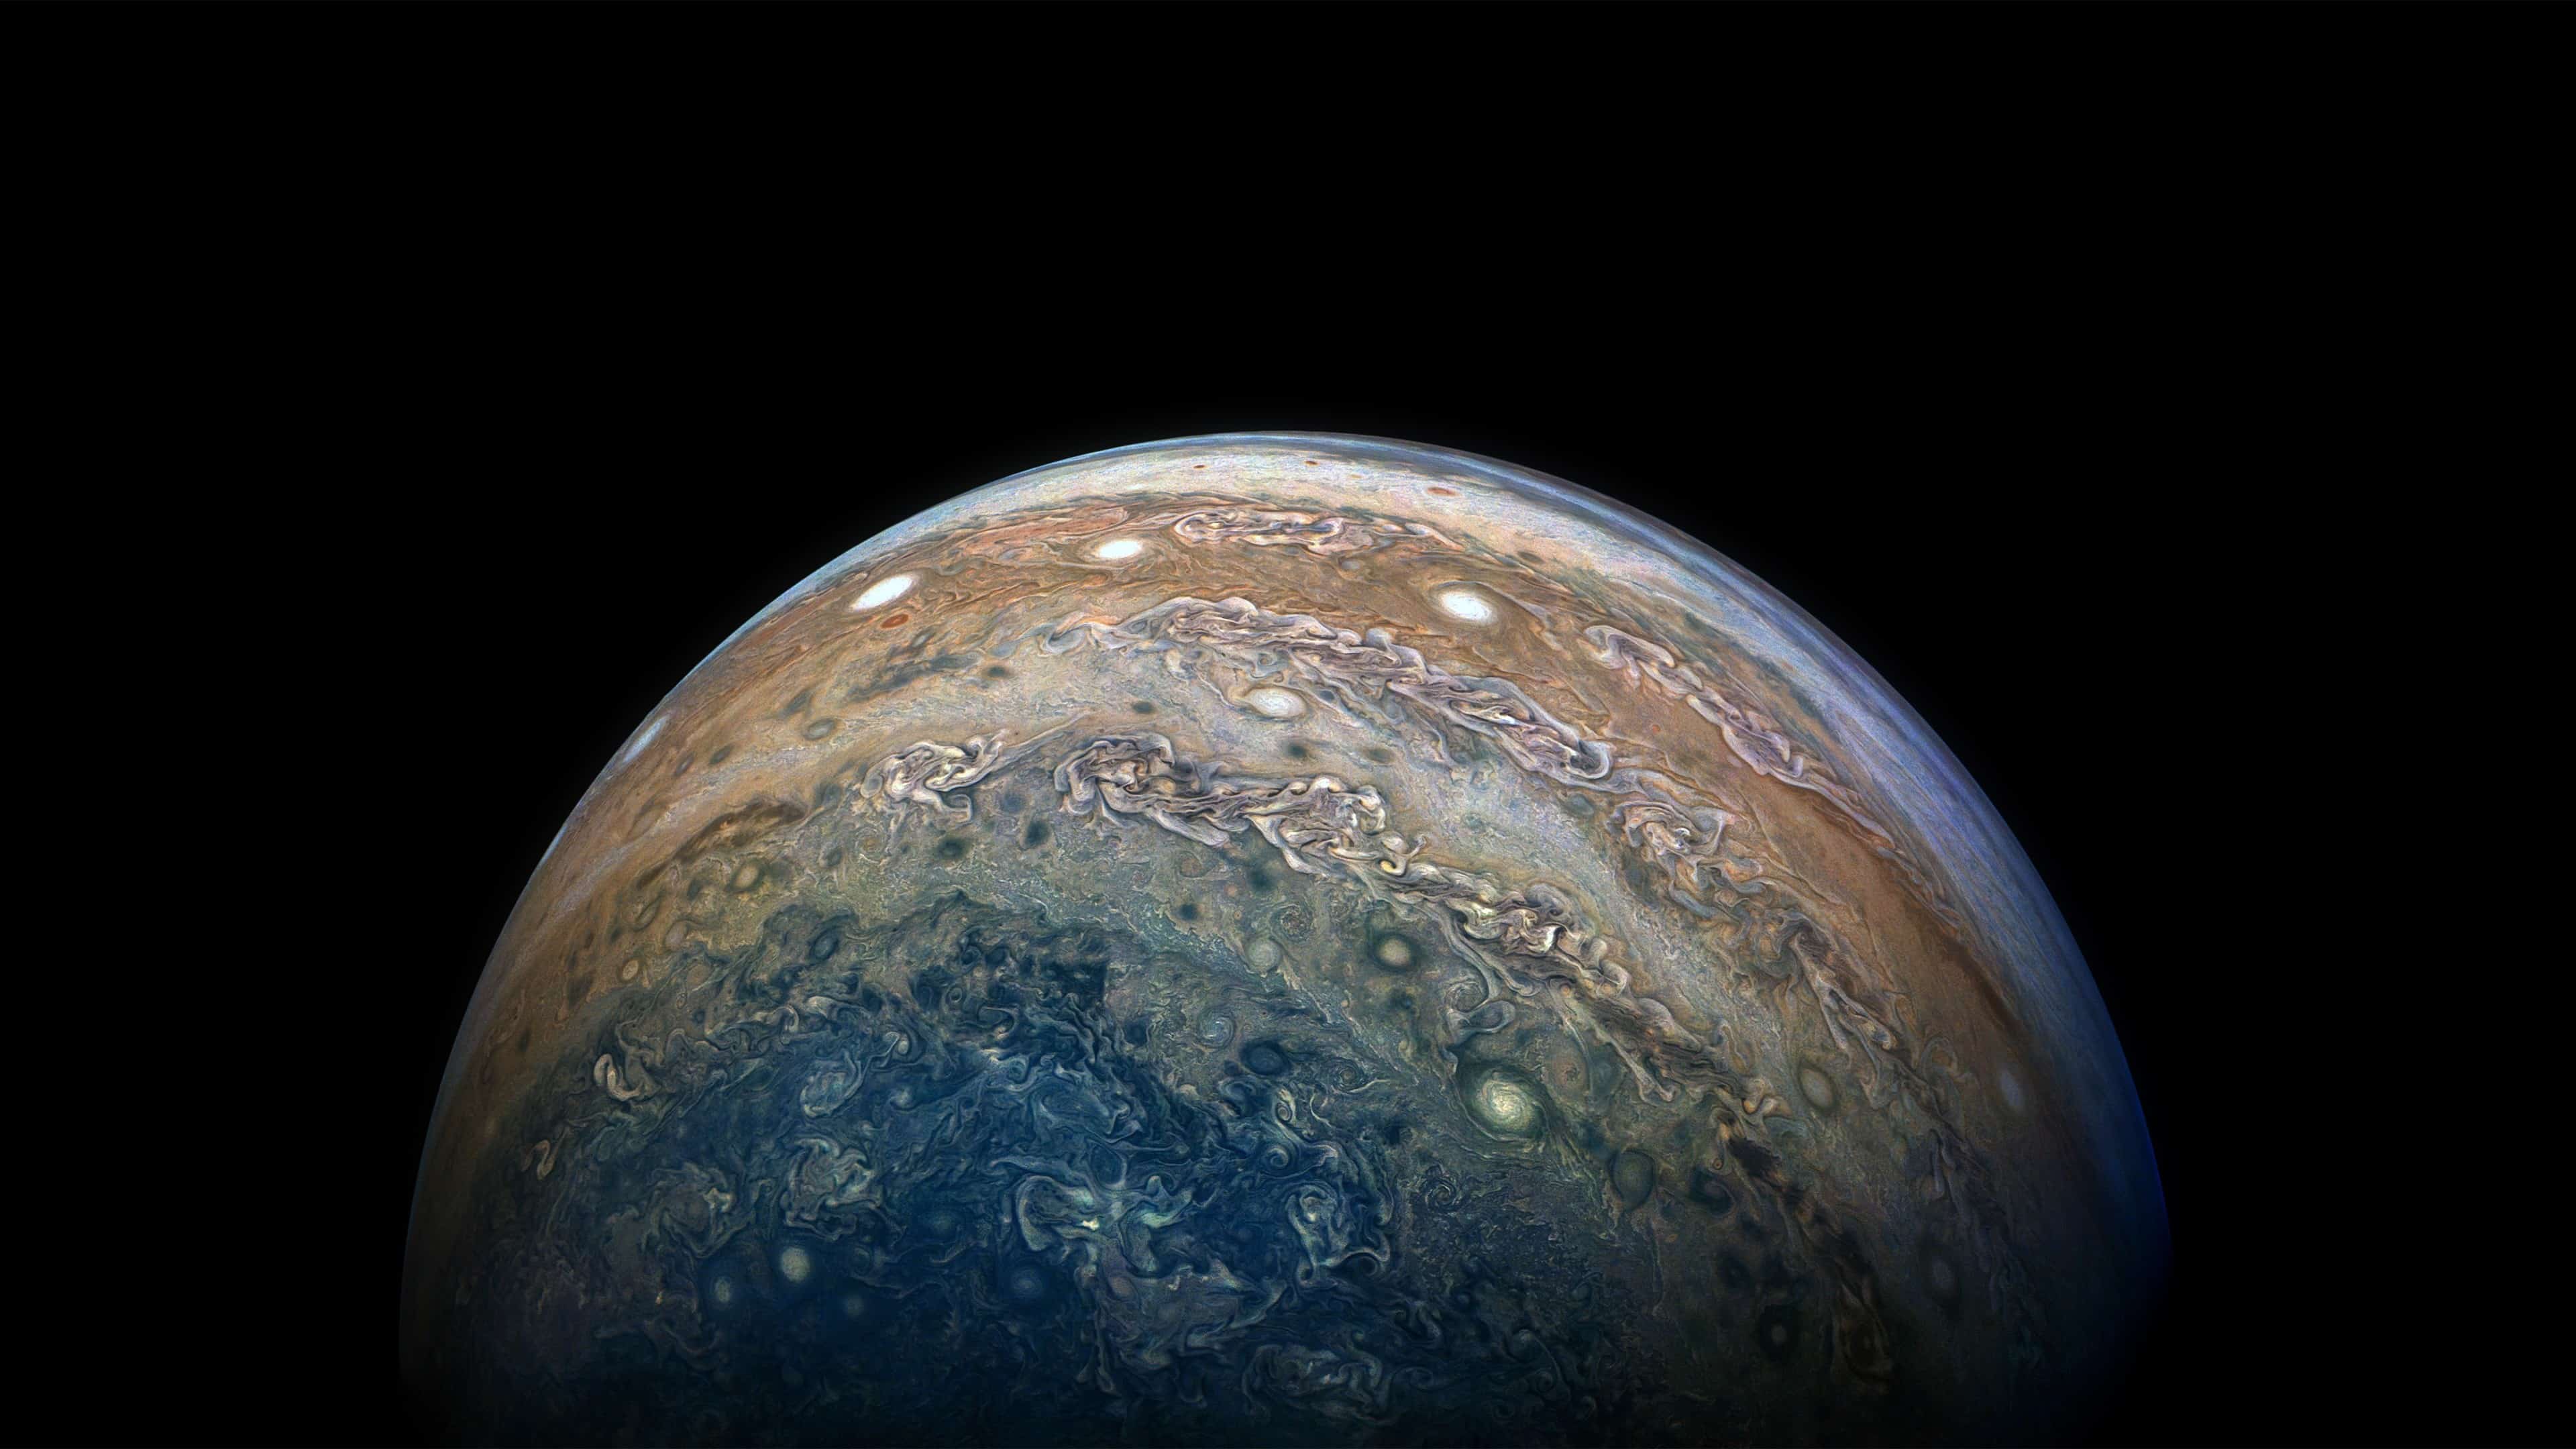 Jupiter Juno Mission UHD 4K Wallpaper | Pixelz